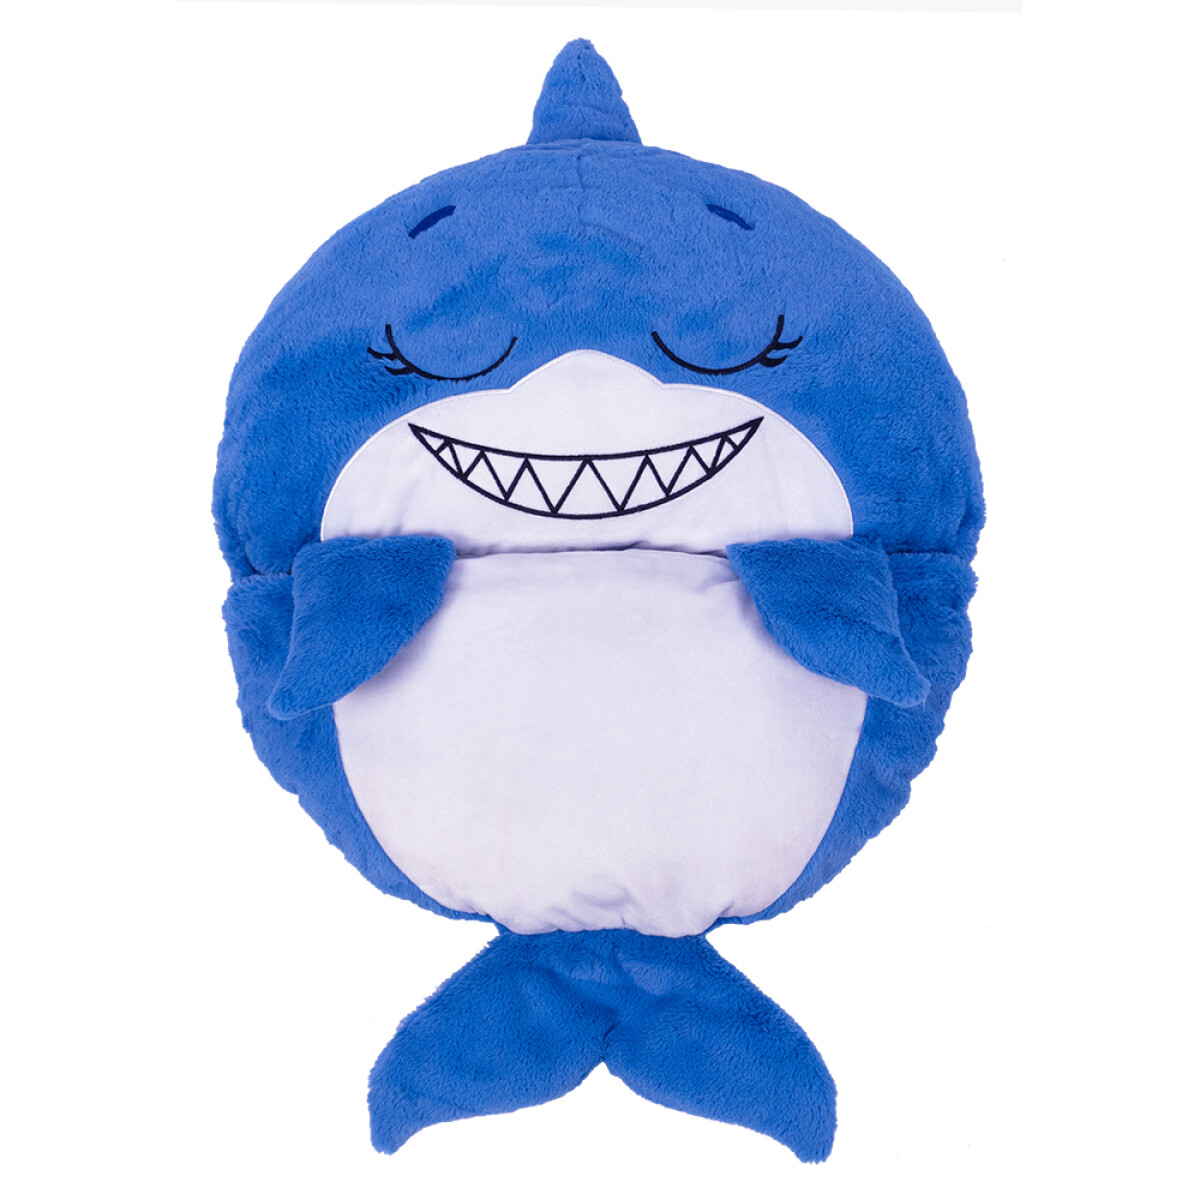 Peluche sobre de dormir - Happy Nappers [Mediano] - Sandal El tiburón azul 